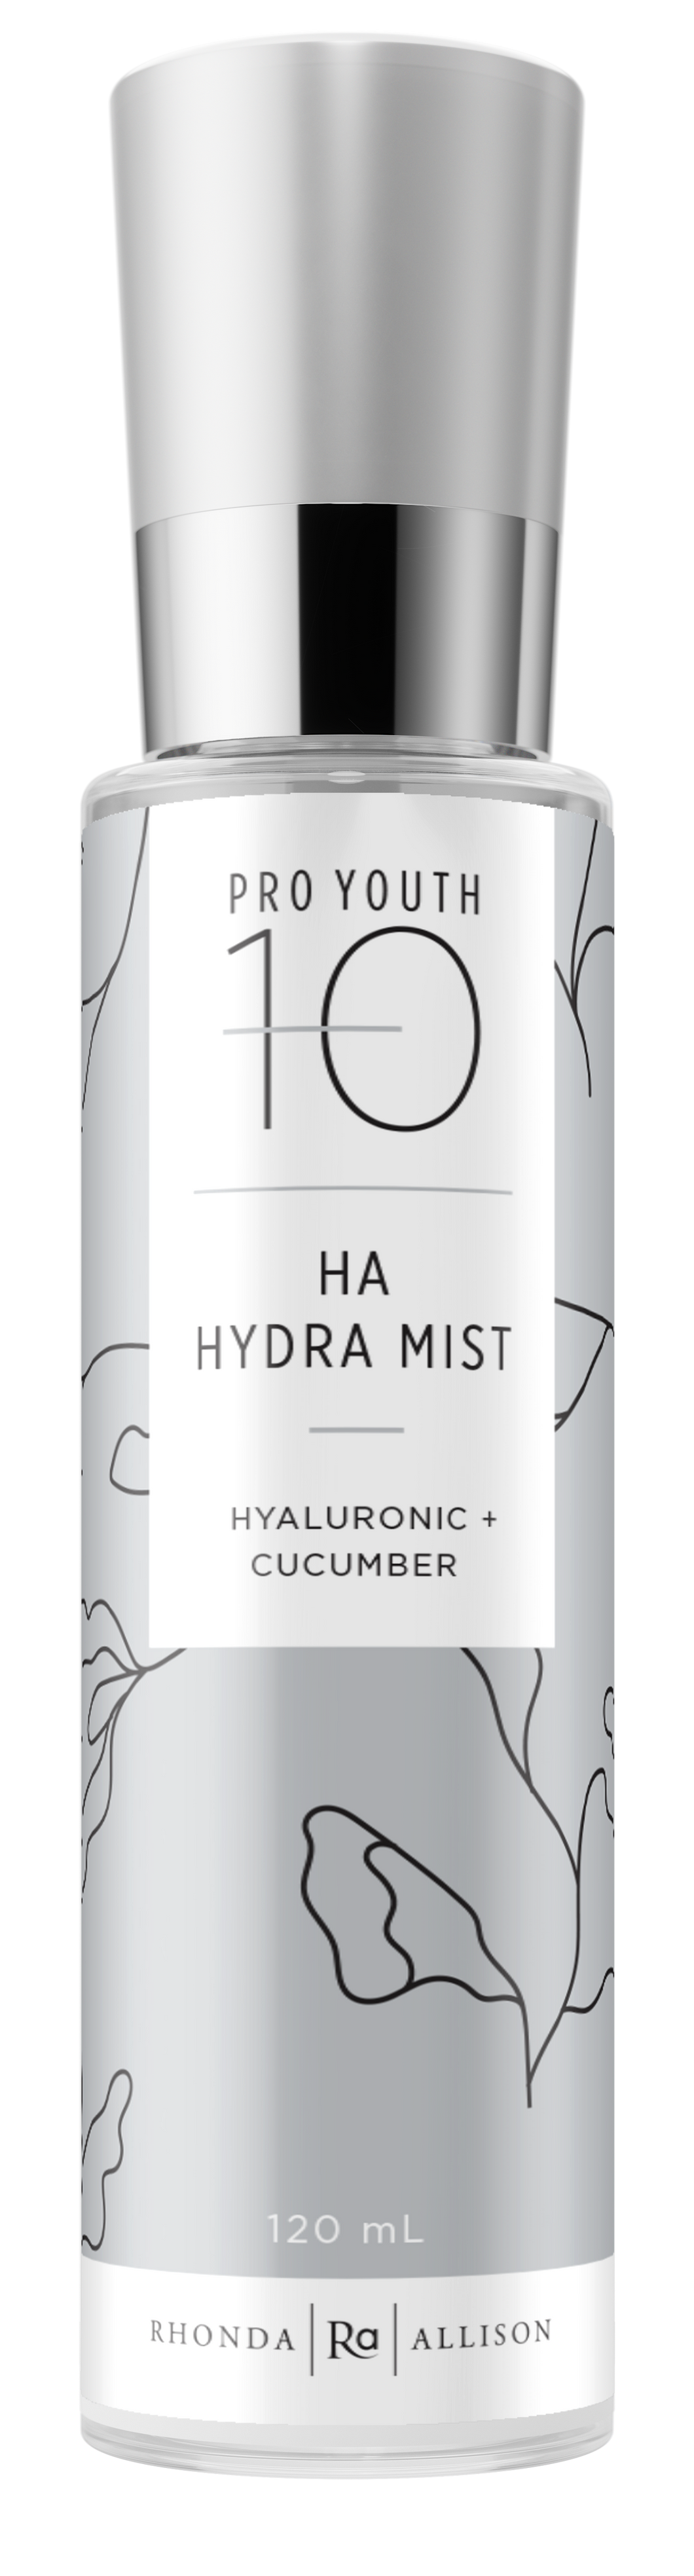 HA Hydra Mist - 120 mL